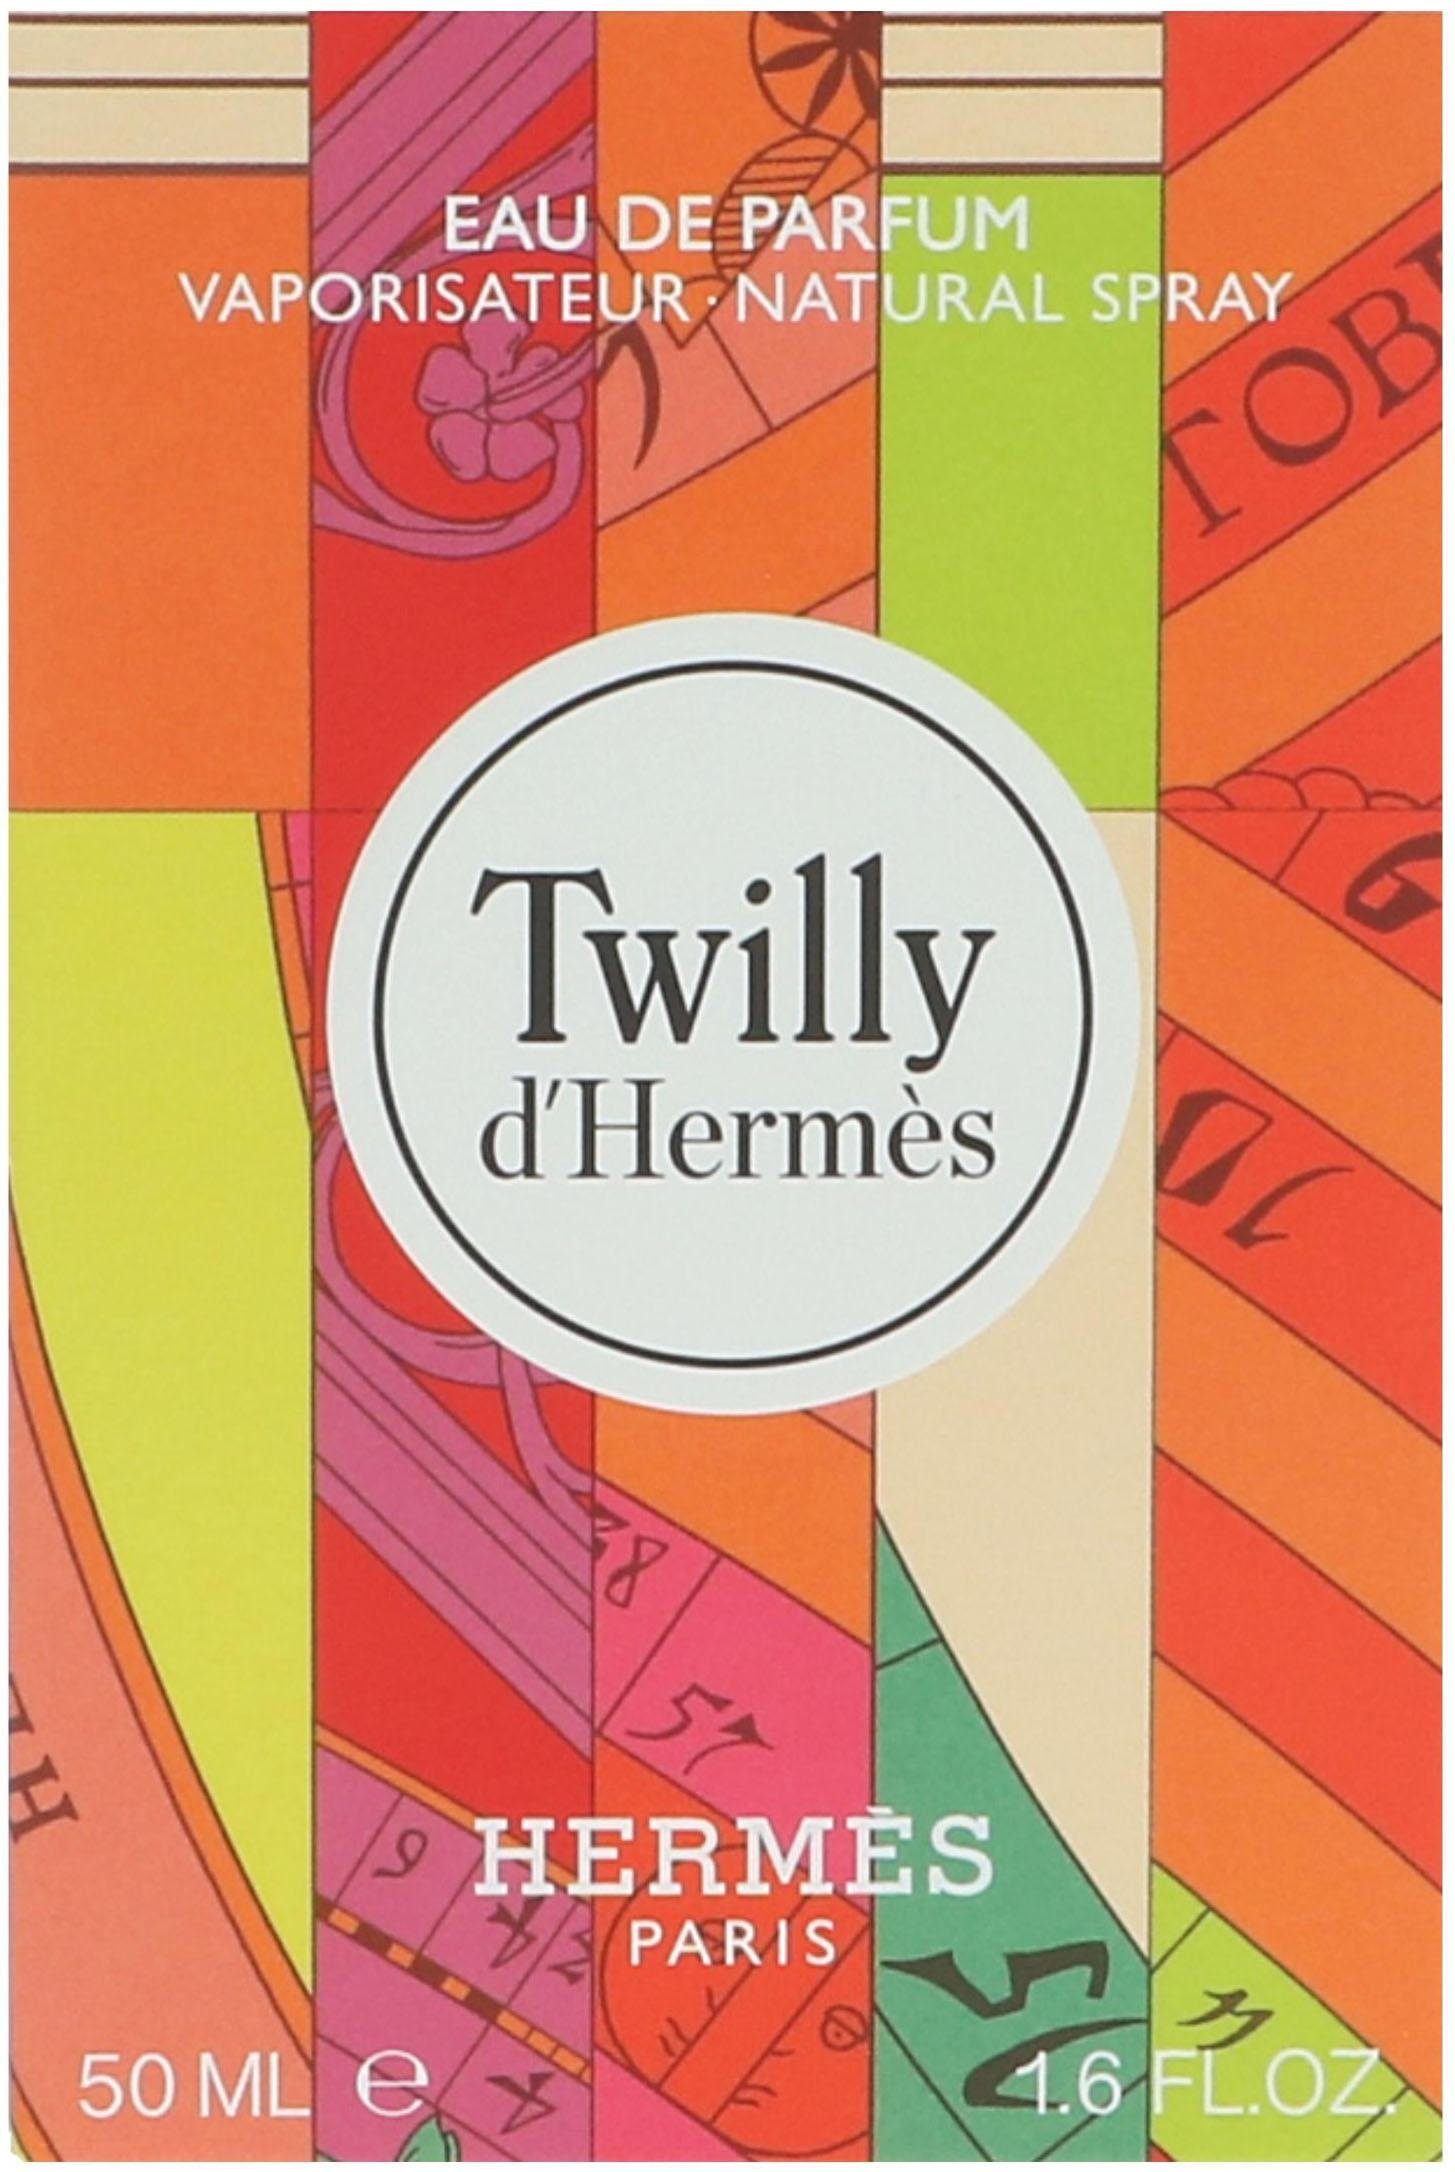 d'Hermes Parfum Twilly Eau de HERMÈS